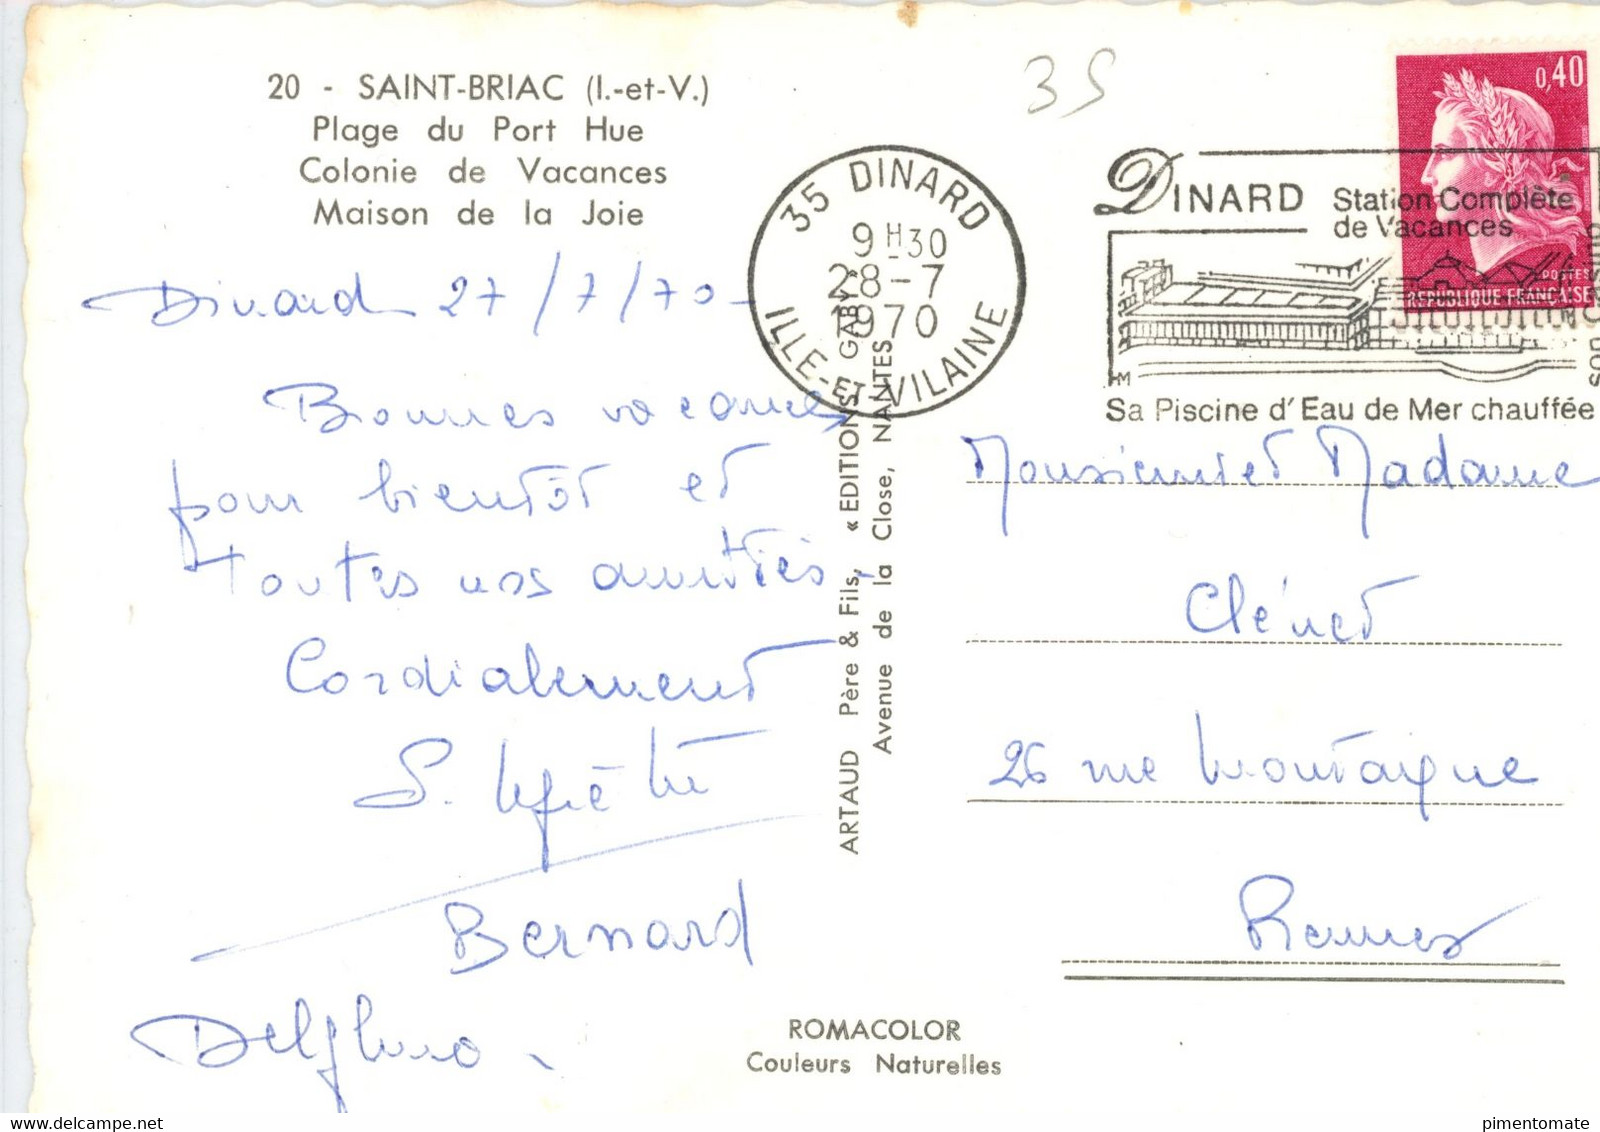 SAINT BRIAC PLAGE DU PORT HUE COLONIE DE VACANCES MAISON DE LA JOIE 1970 - Saint-Briac